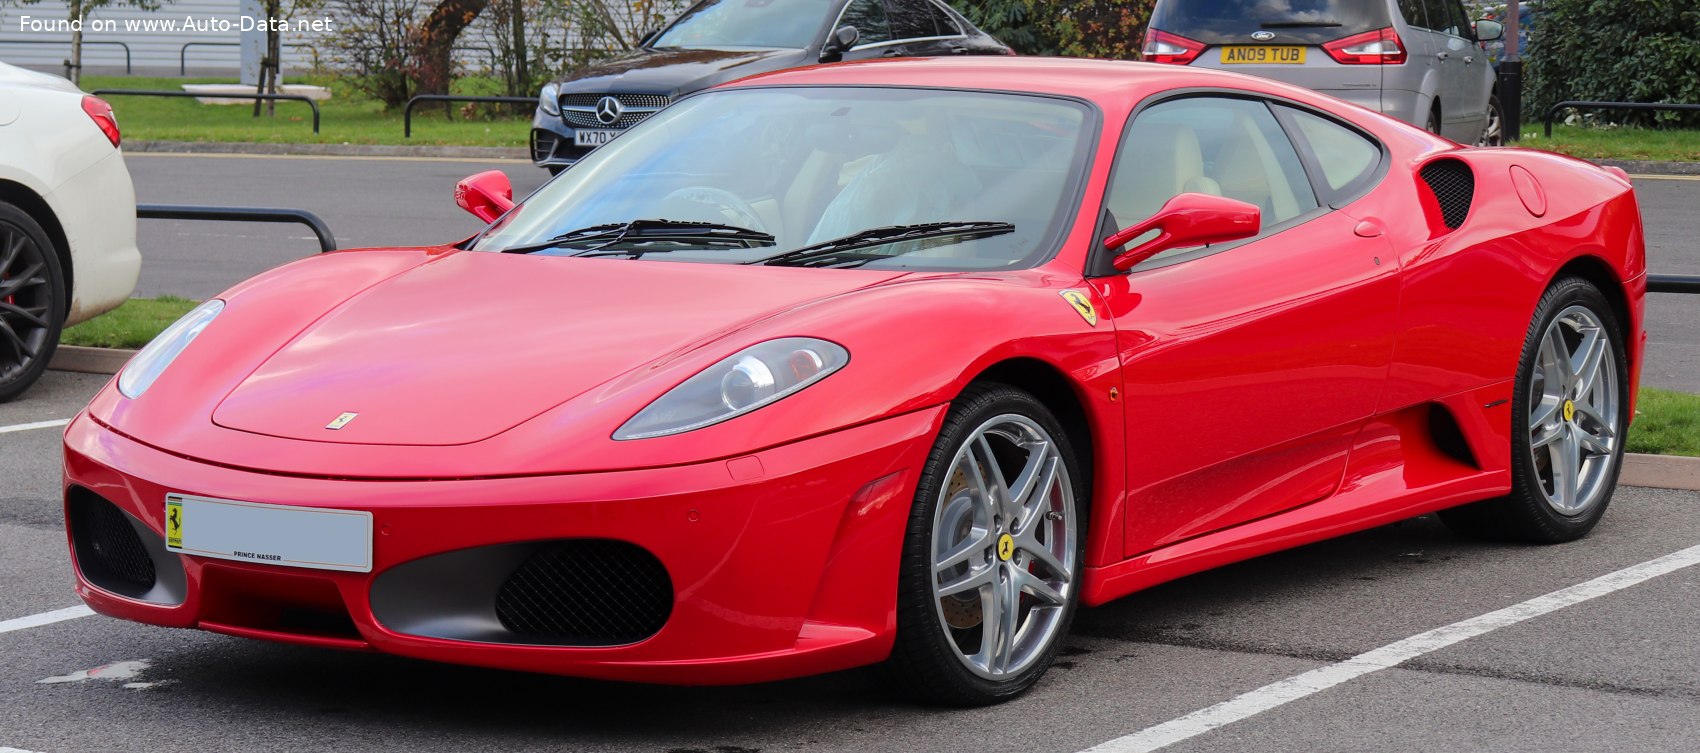 2004 Ferrari F430 4.3 i V8 32V (490 Hp) | Technical specs, data, fuel consumption, Dimensions